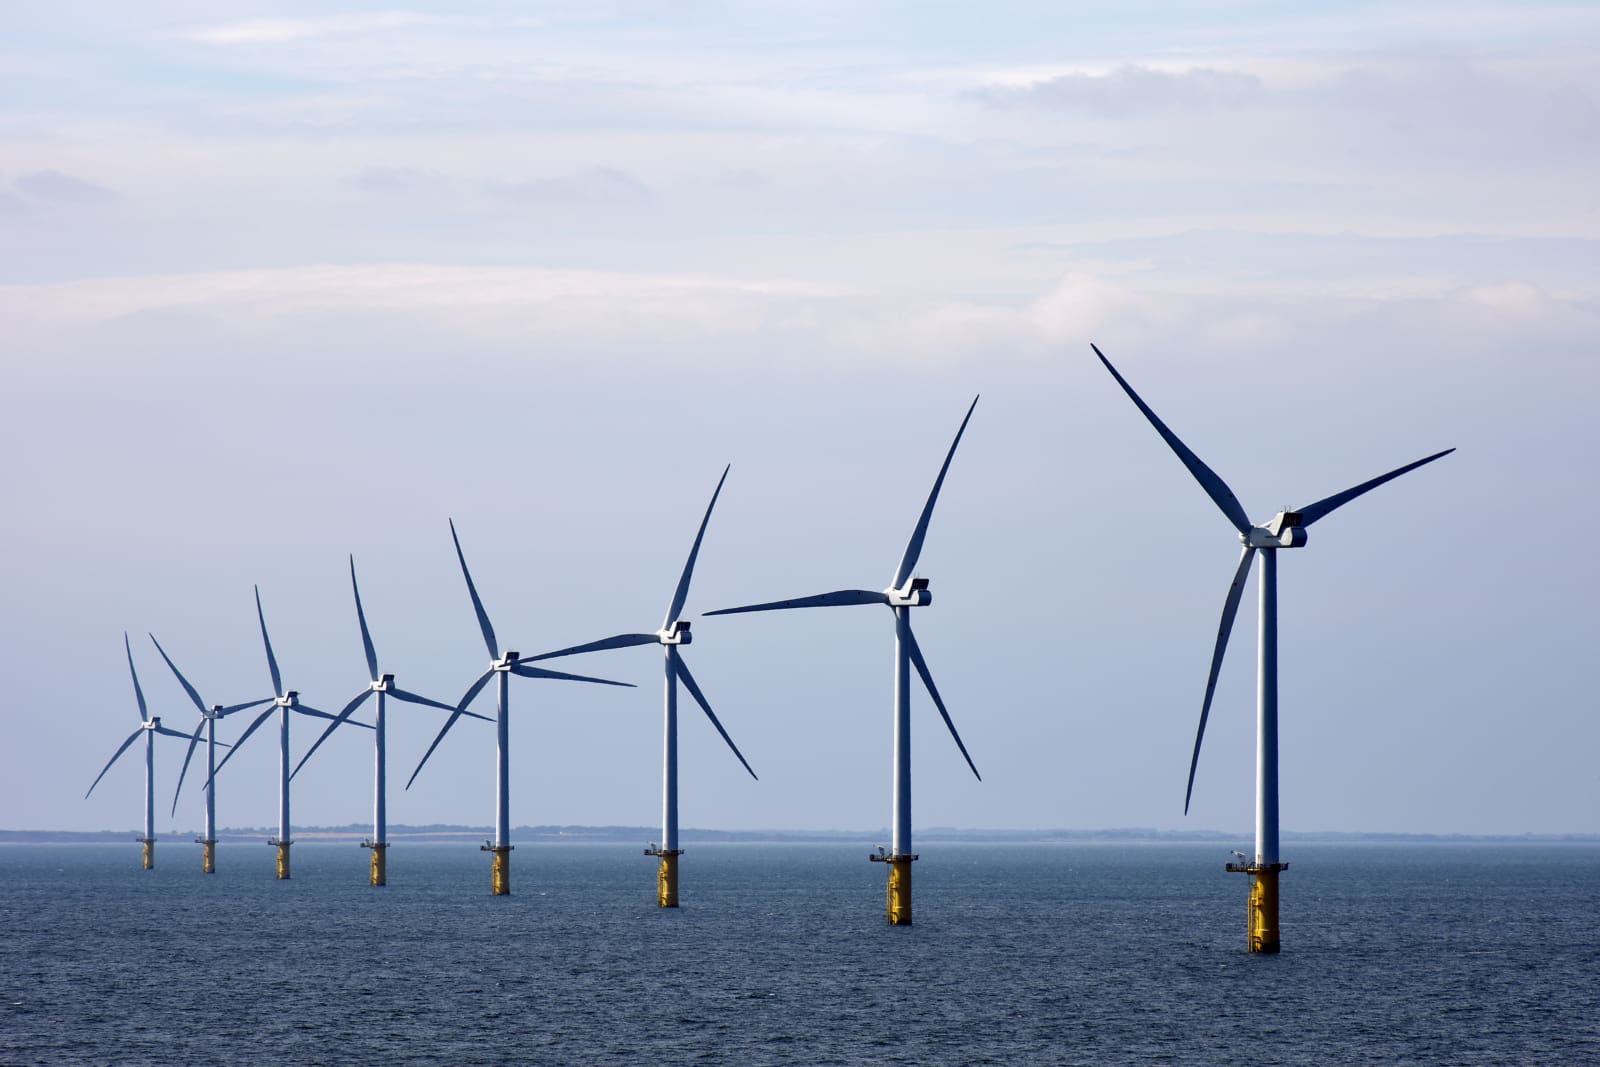 Offshore windmill farm in the North Sea.